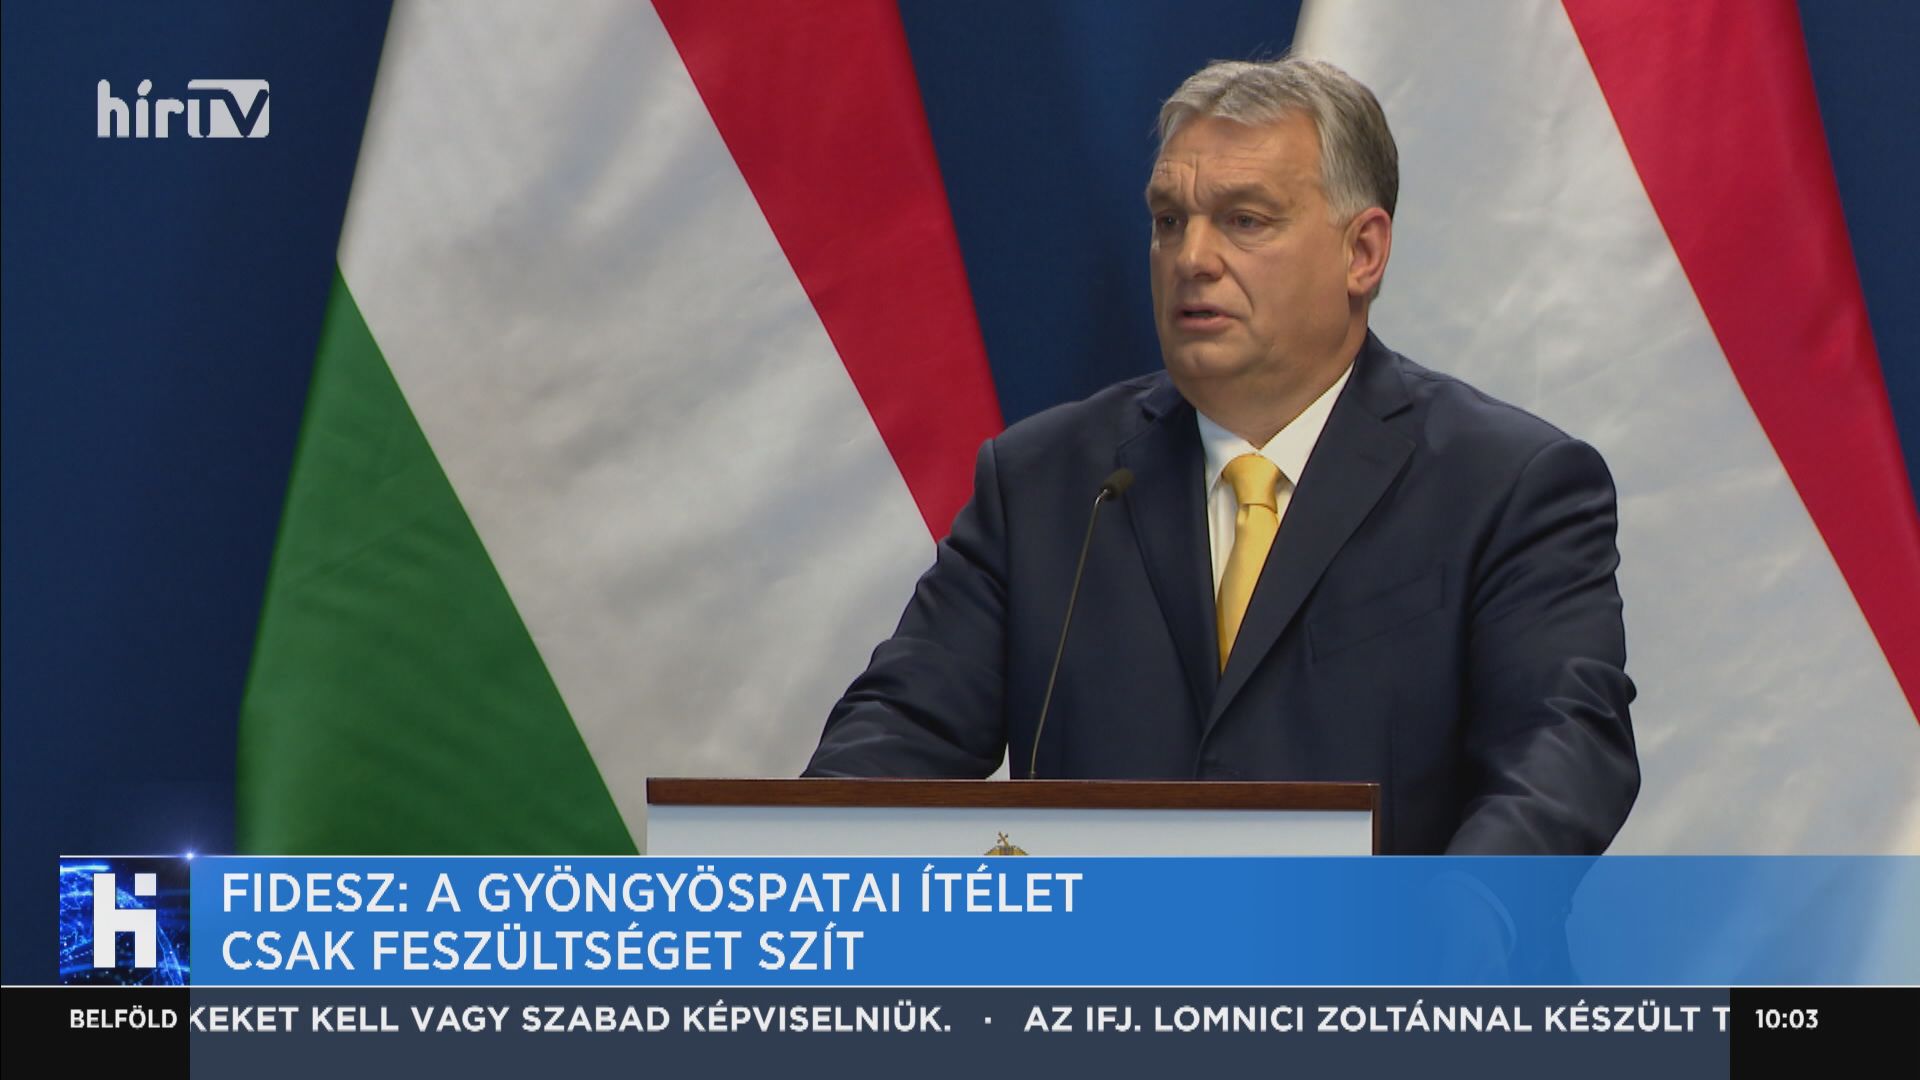 Fidesz: A gyöngyöspatai ítélet csak feszültséget szít